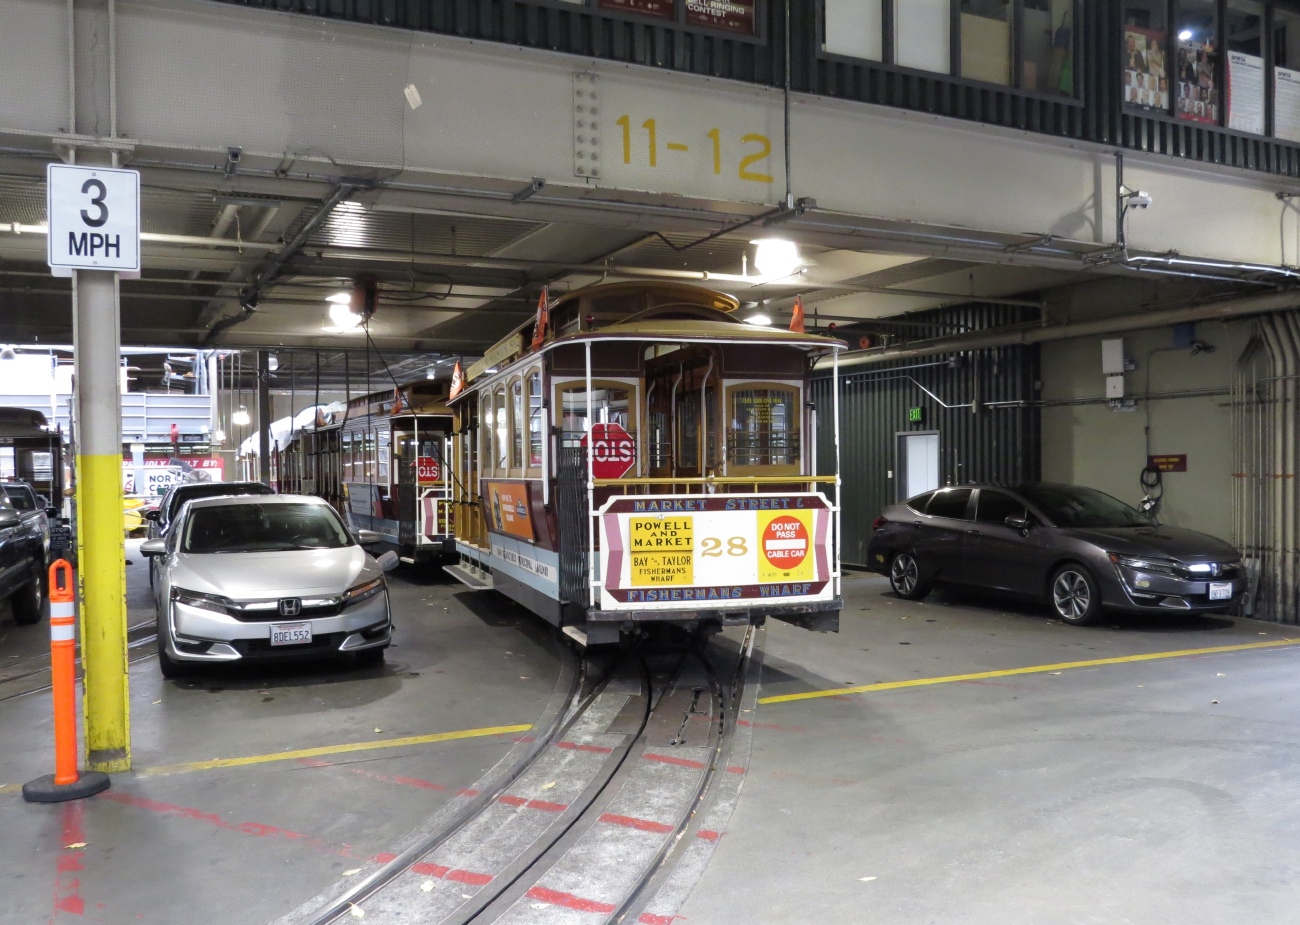 Сан-Франциско, область залива, Muni cable car № 28; Сан-Франциско, область залива — Депо кабельного трамвая